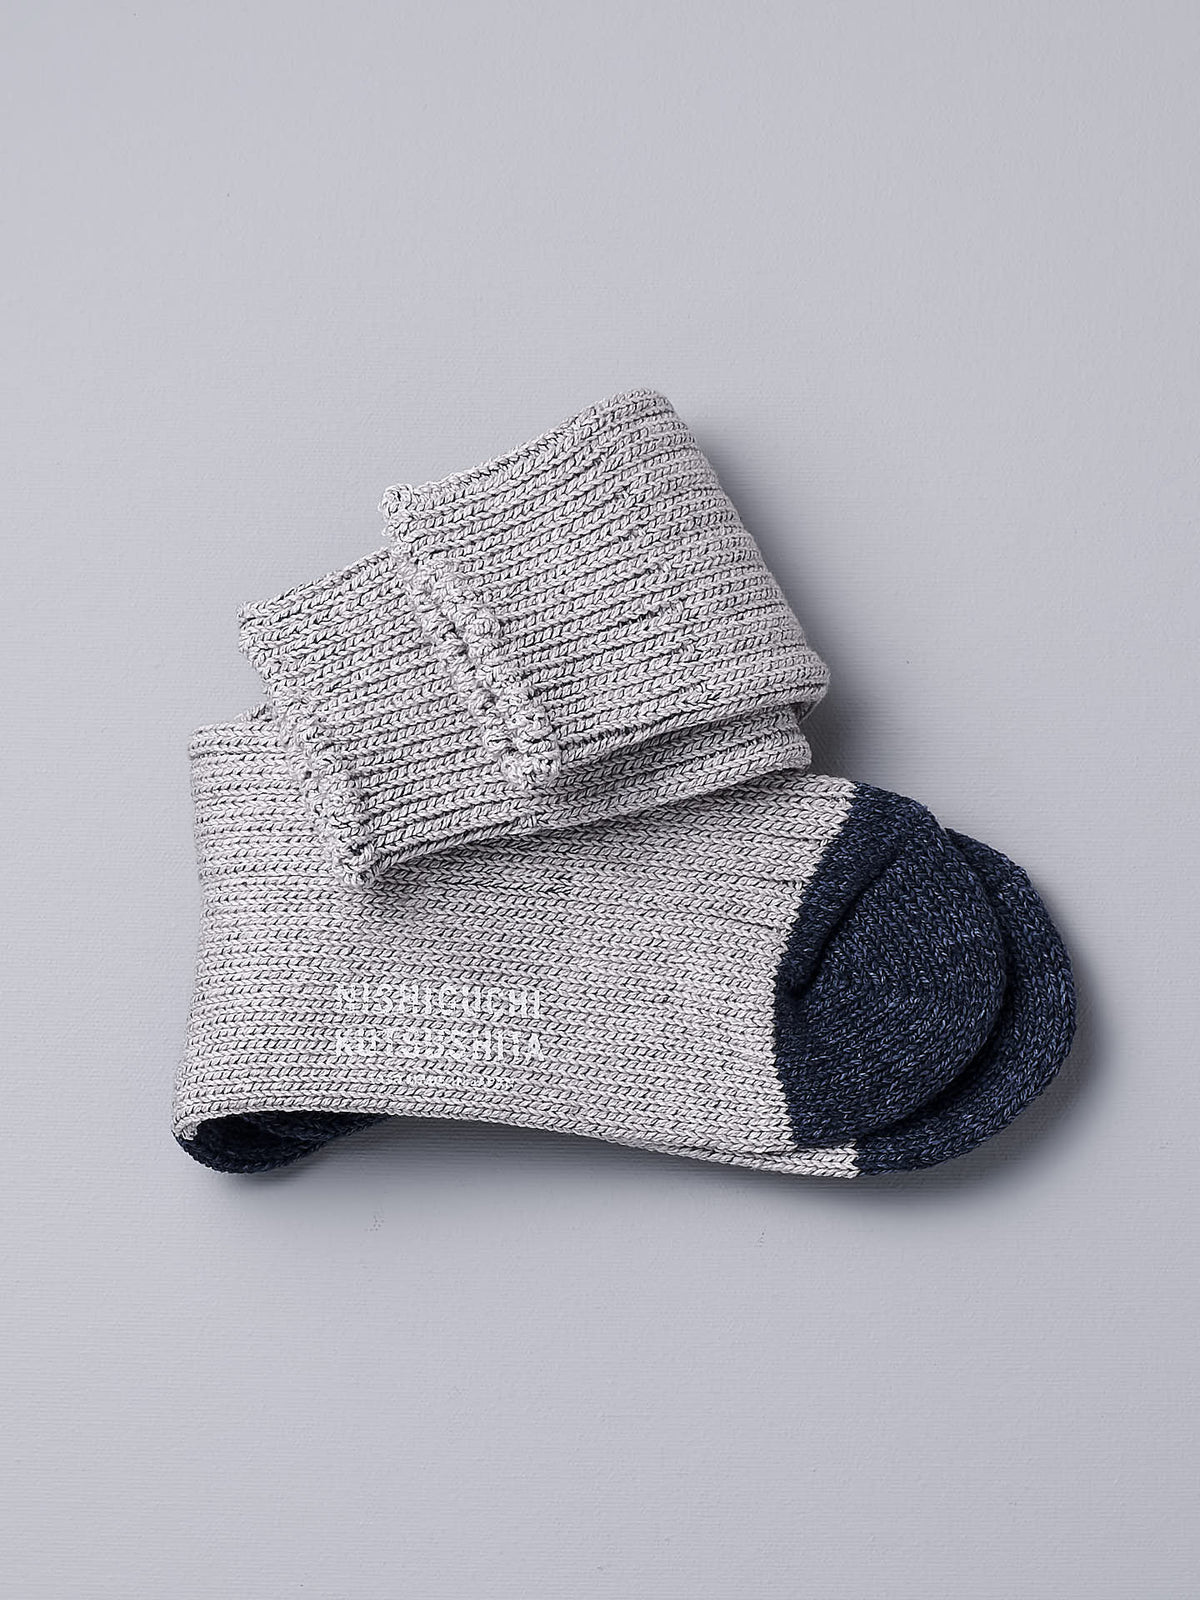 A pair of Boston Slab Socks - Grey Denim by Nishiguchi Kutsushita on a white background.